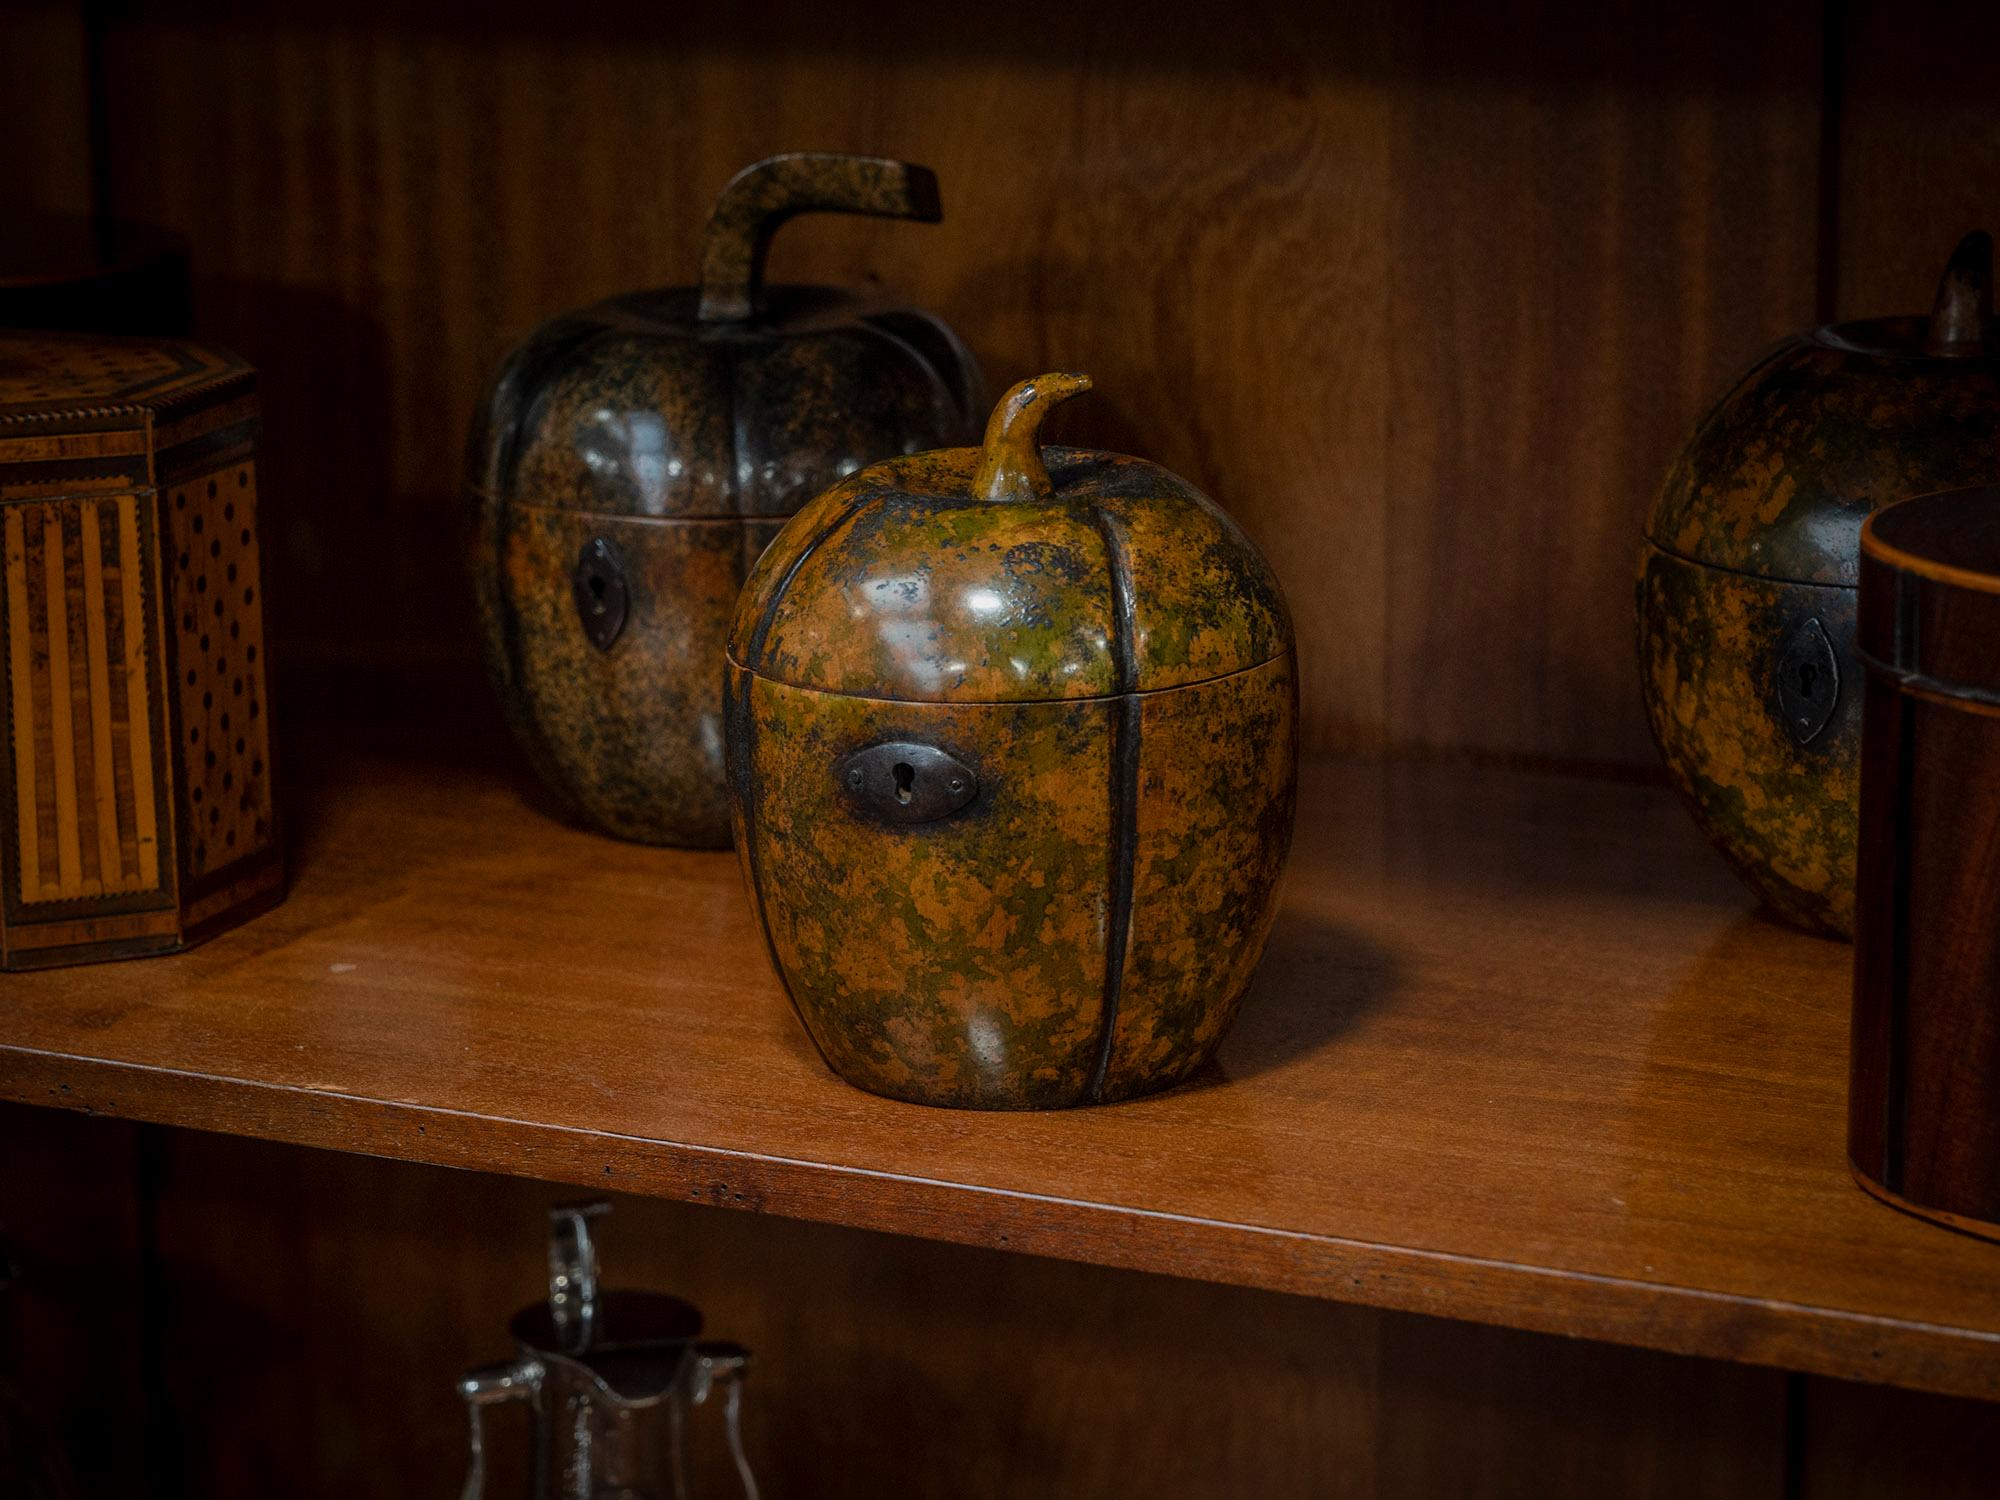 Die Teedose ist ein außergewöhnliches Exemplar in Form einer Melone und aus Sycamore mit einer schönen gesprenkelten Patinierung, die Farben von Moosgrün und dezentem Orange zeigt. Die Teedose wird von einem geschwungenen, naturalistischen Endstück